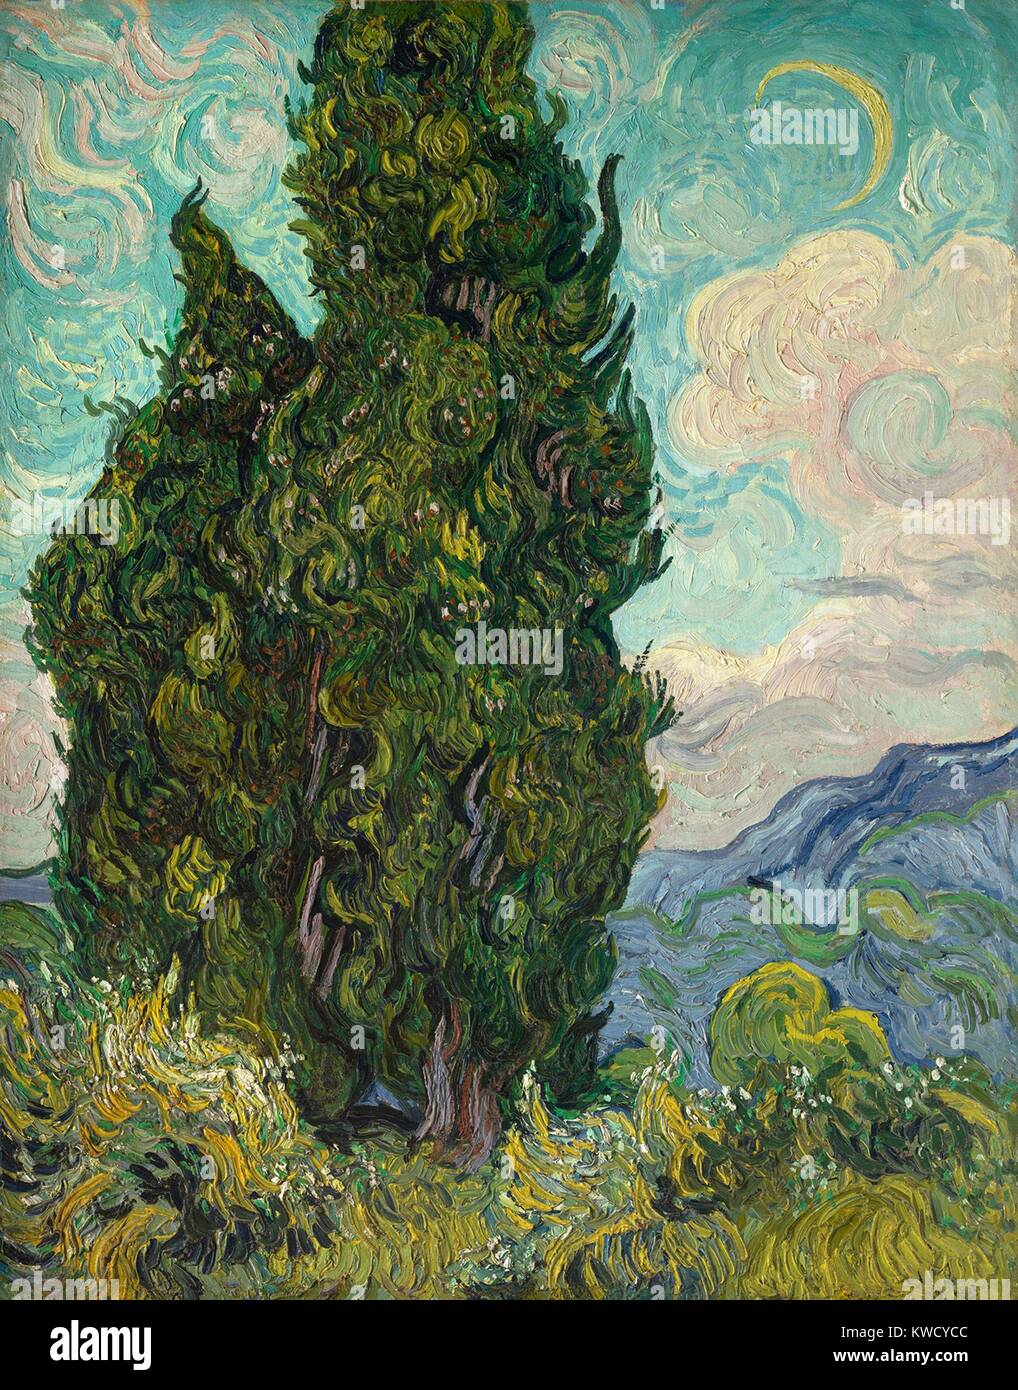 Cipressi di Vincent Van Gogh, 1889, olandese Post-Impressionist, olio su tela. Van Gogh descritto il cipresso come il dark patch in una soleggiata paesaggio. Essa è stata illustrata nel Salon des indipendenti a Parigi nel 1890. (BSLOC 2017 5 54) Foto Stock